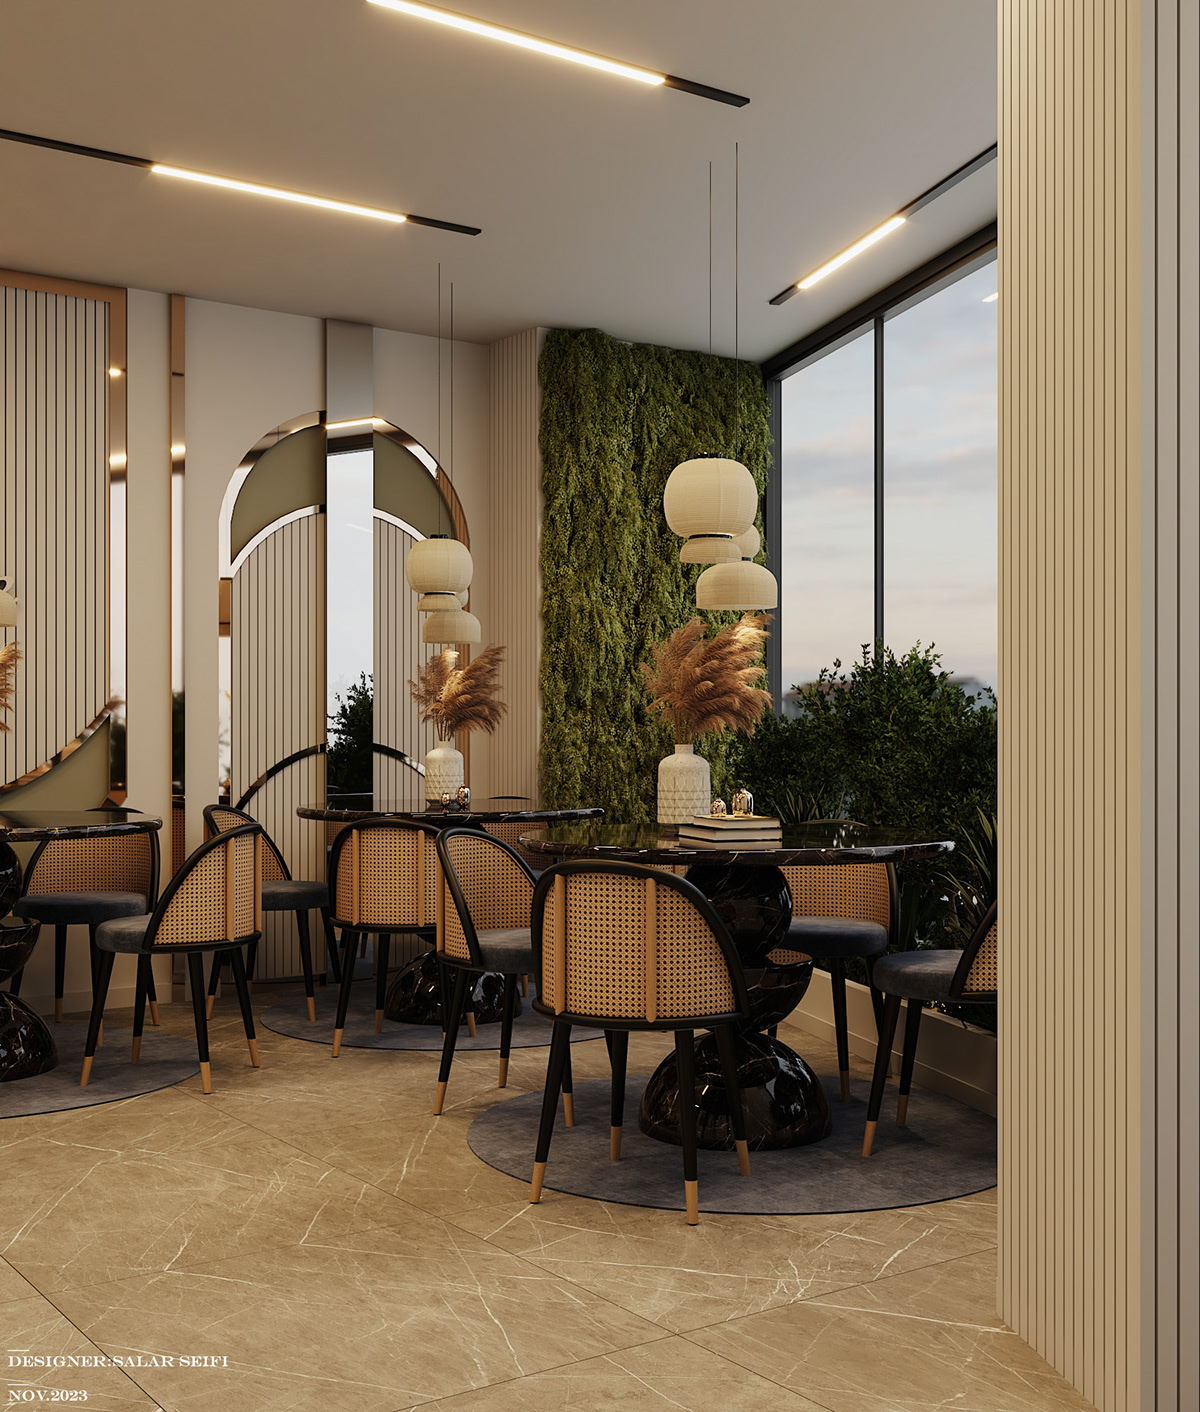 Coffee restaurant interior design  architecture visualization Render archviz modern achitecture coffedesign